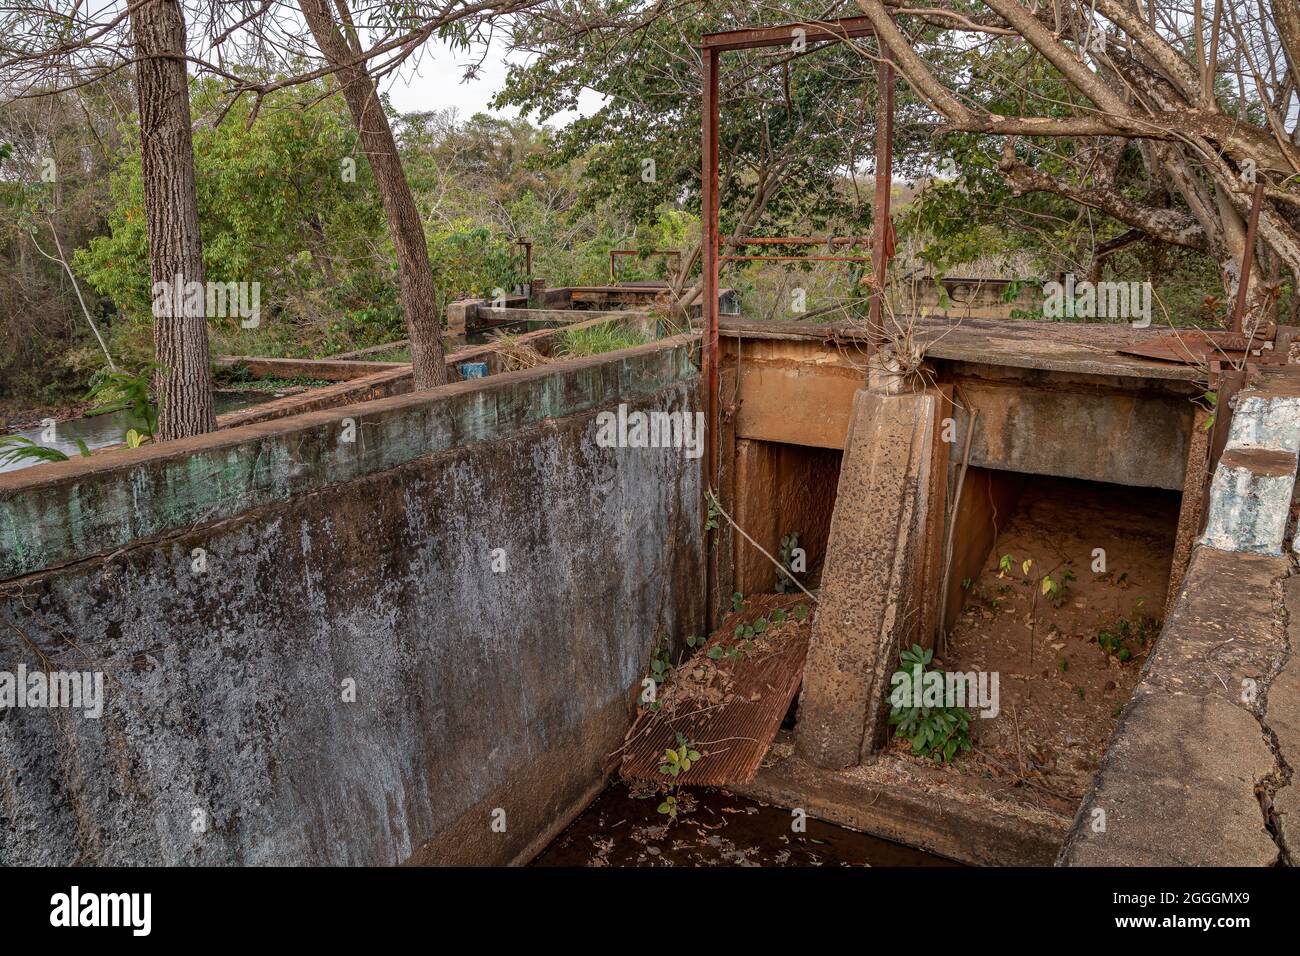 Cassilandia, Mato Grosso do Sul, Brasilien - 08 28 2021: Schleusentore der Wasserkanäle, die einen Teil des Wassers vom Fluss zum kleinen aba umleiten Stockfoto